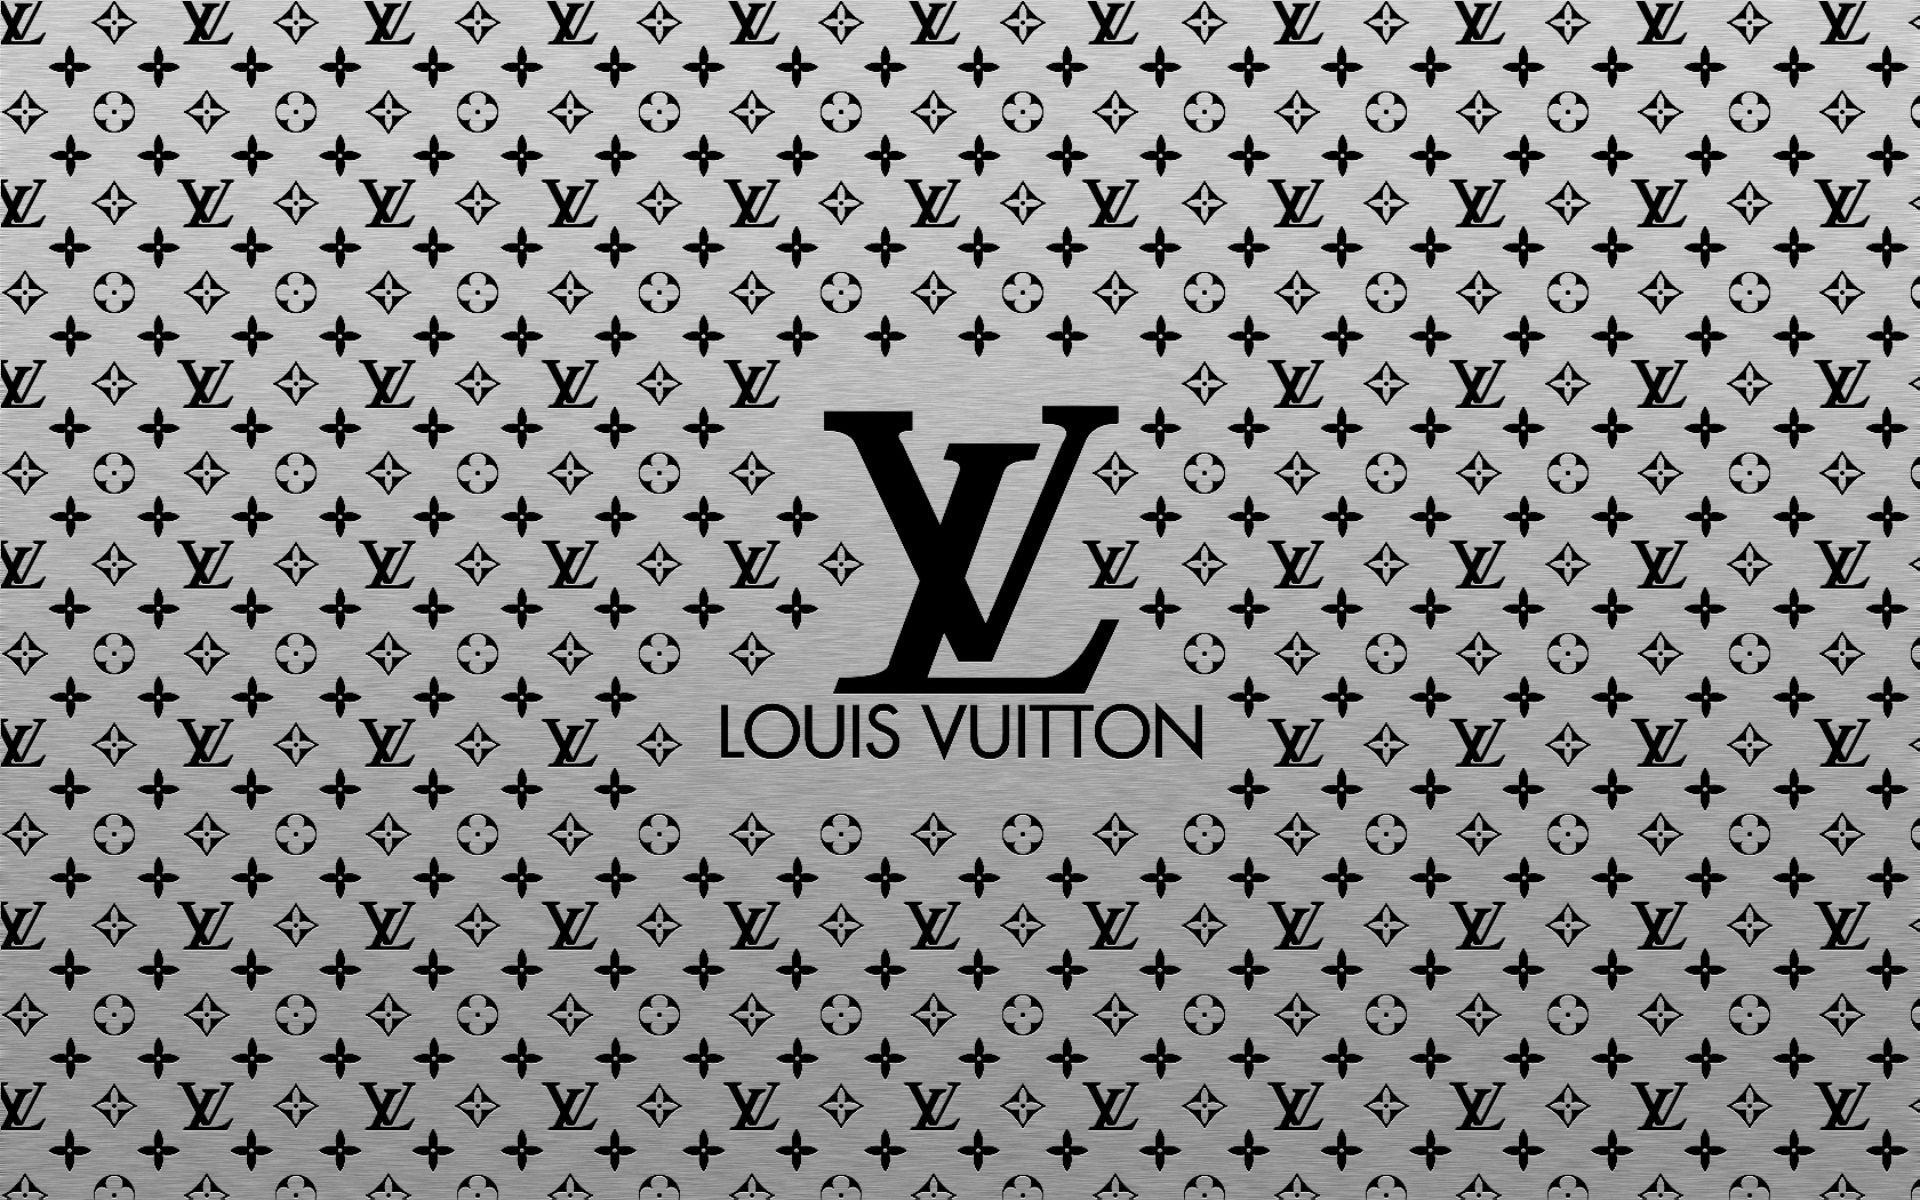 Fonds d'écran Louis Vuitton : tous les wallpapers Louis Vuitton